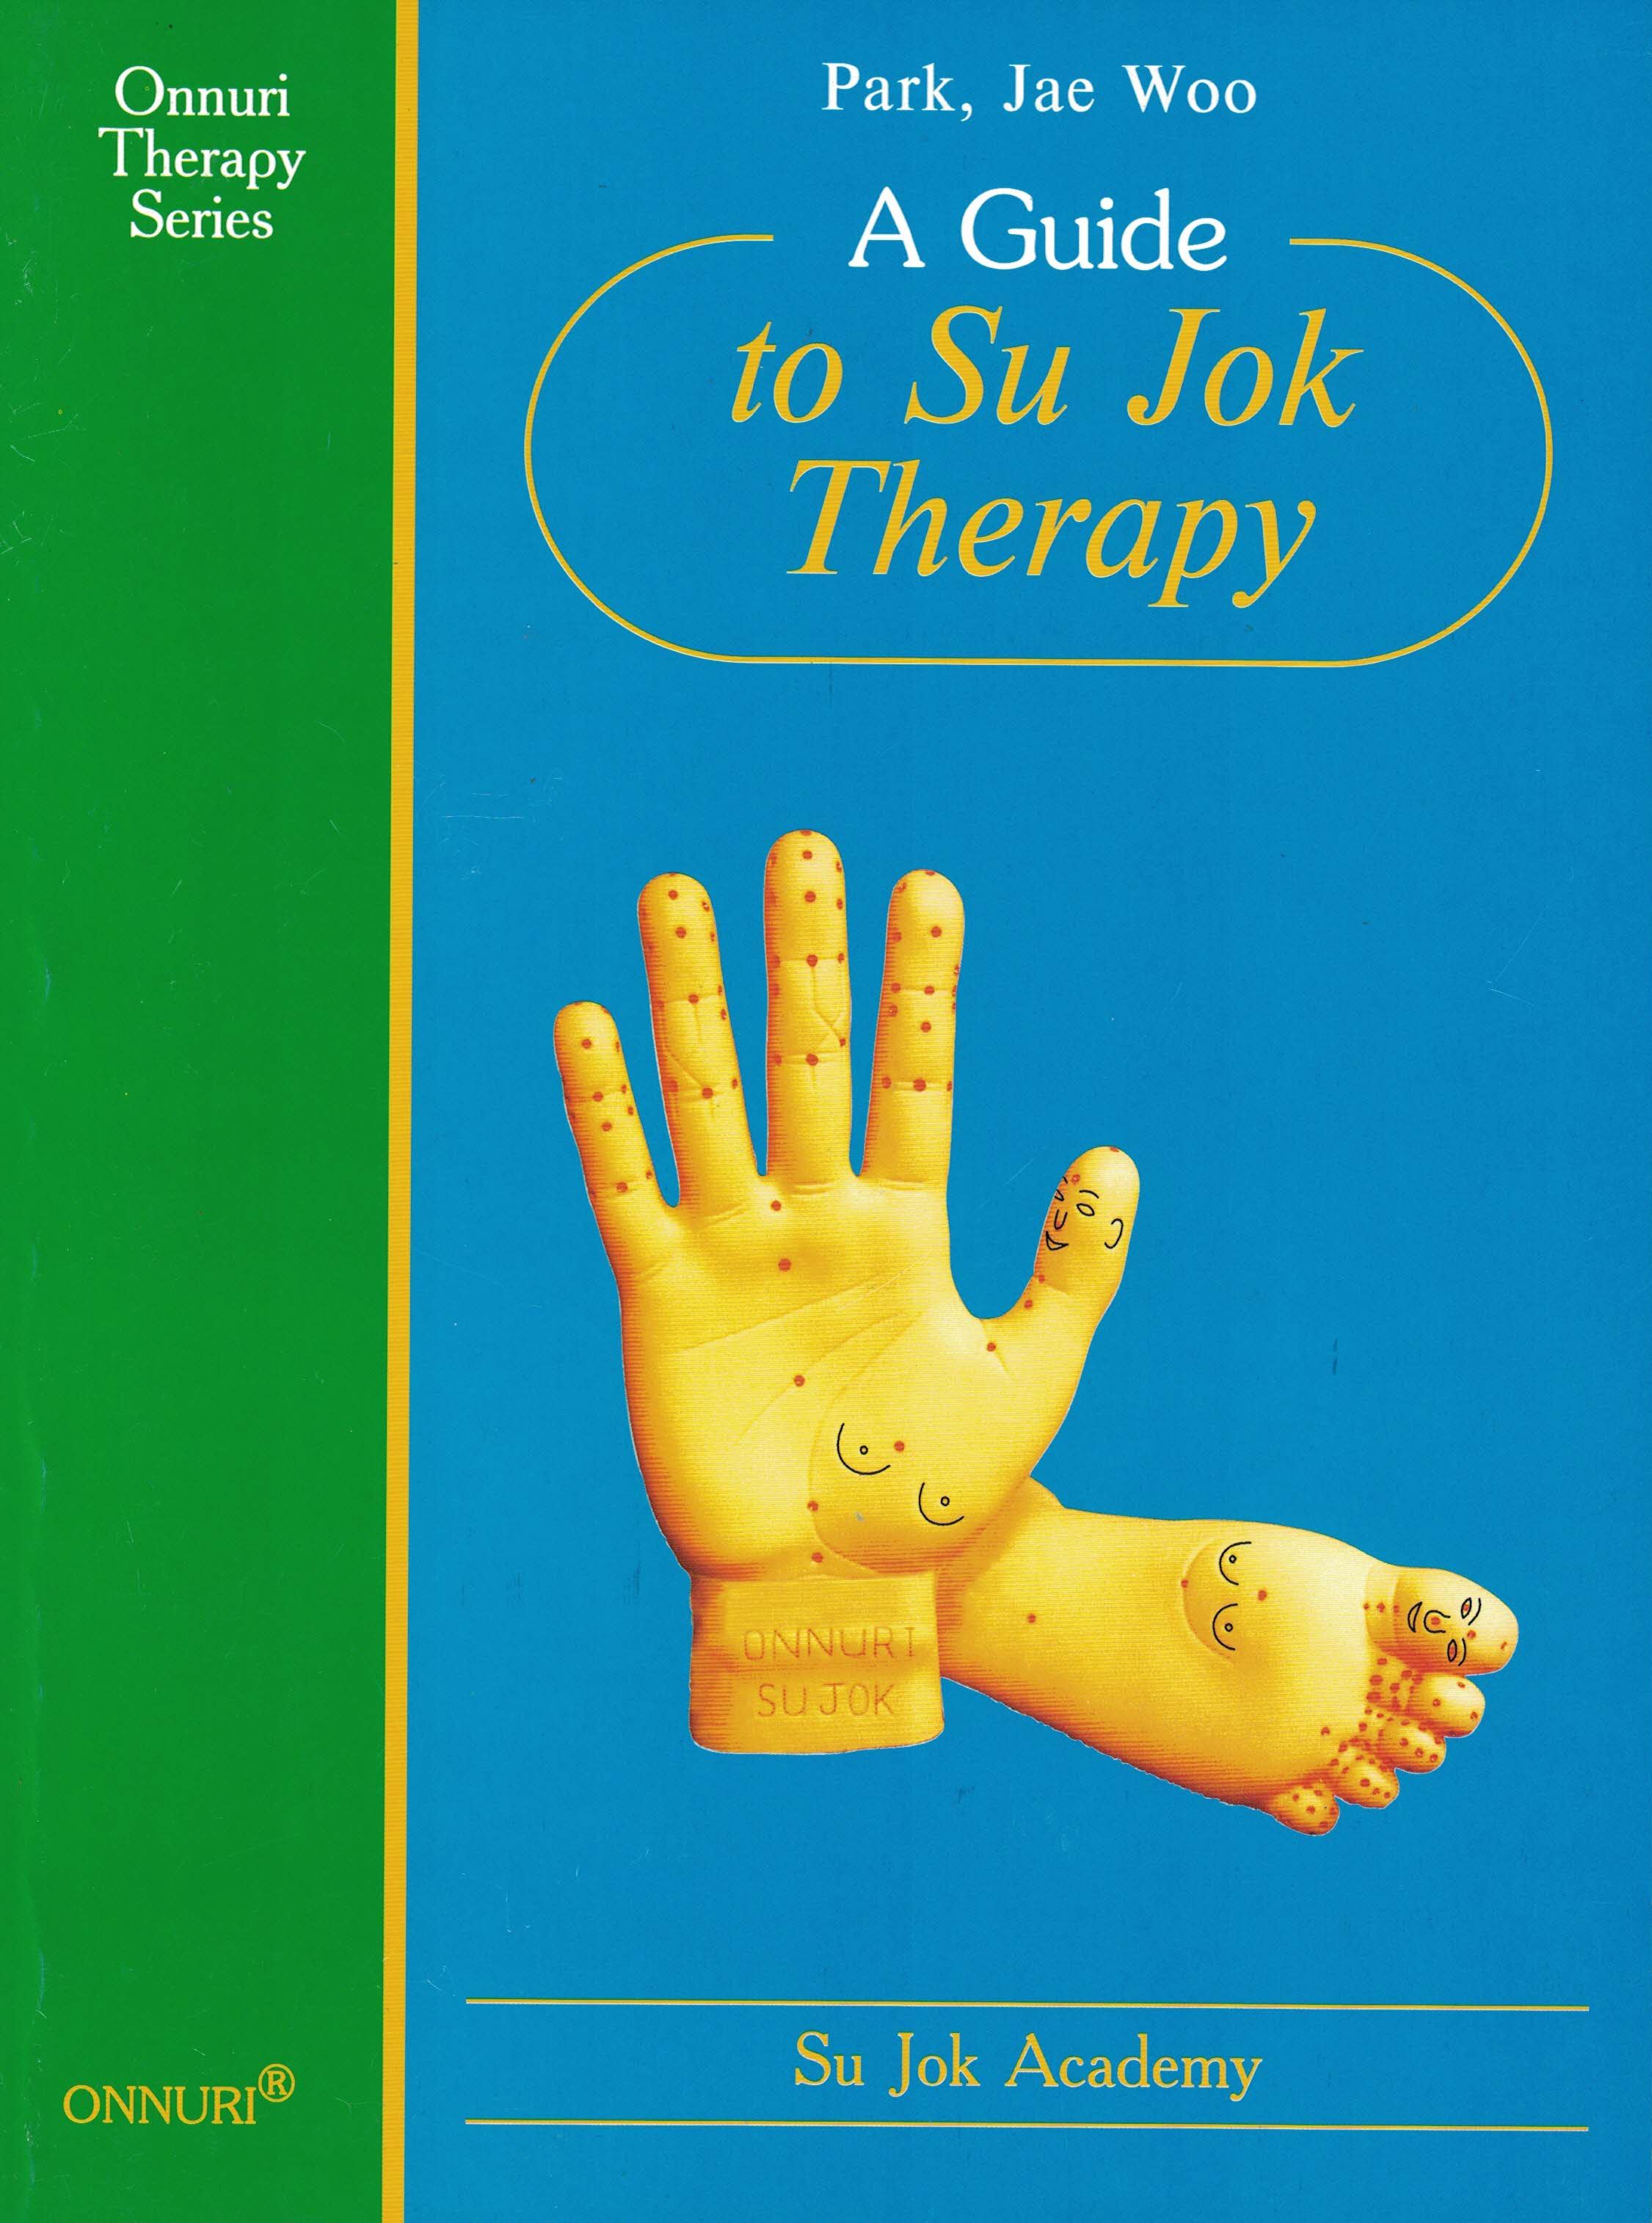 Пак чже ву. Пак Дже ву Су Джок терапия. Книга основы Су Джок терапии. Пак Чже ву «Су Джок семянотерапия». Пак Чже ву основы Су Джок терапии.